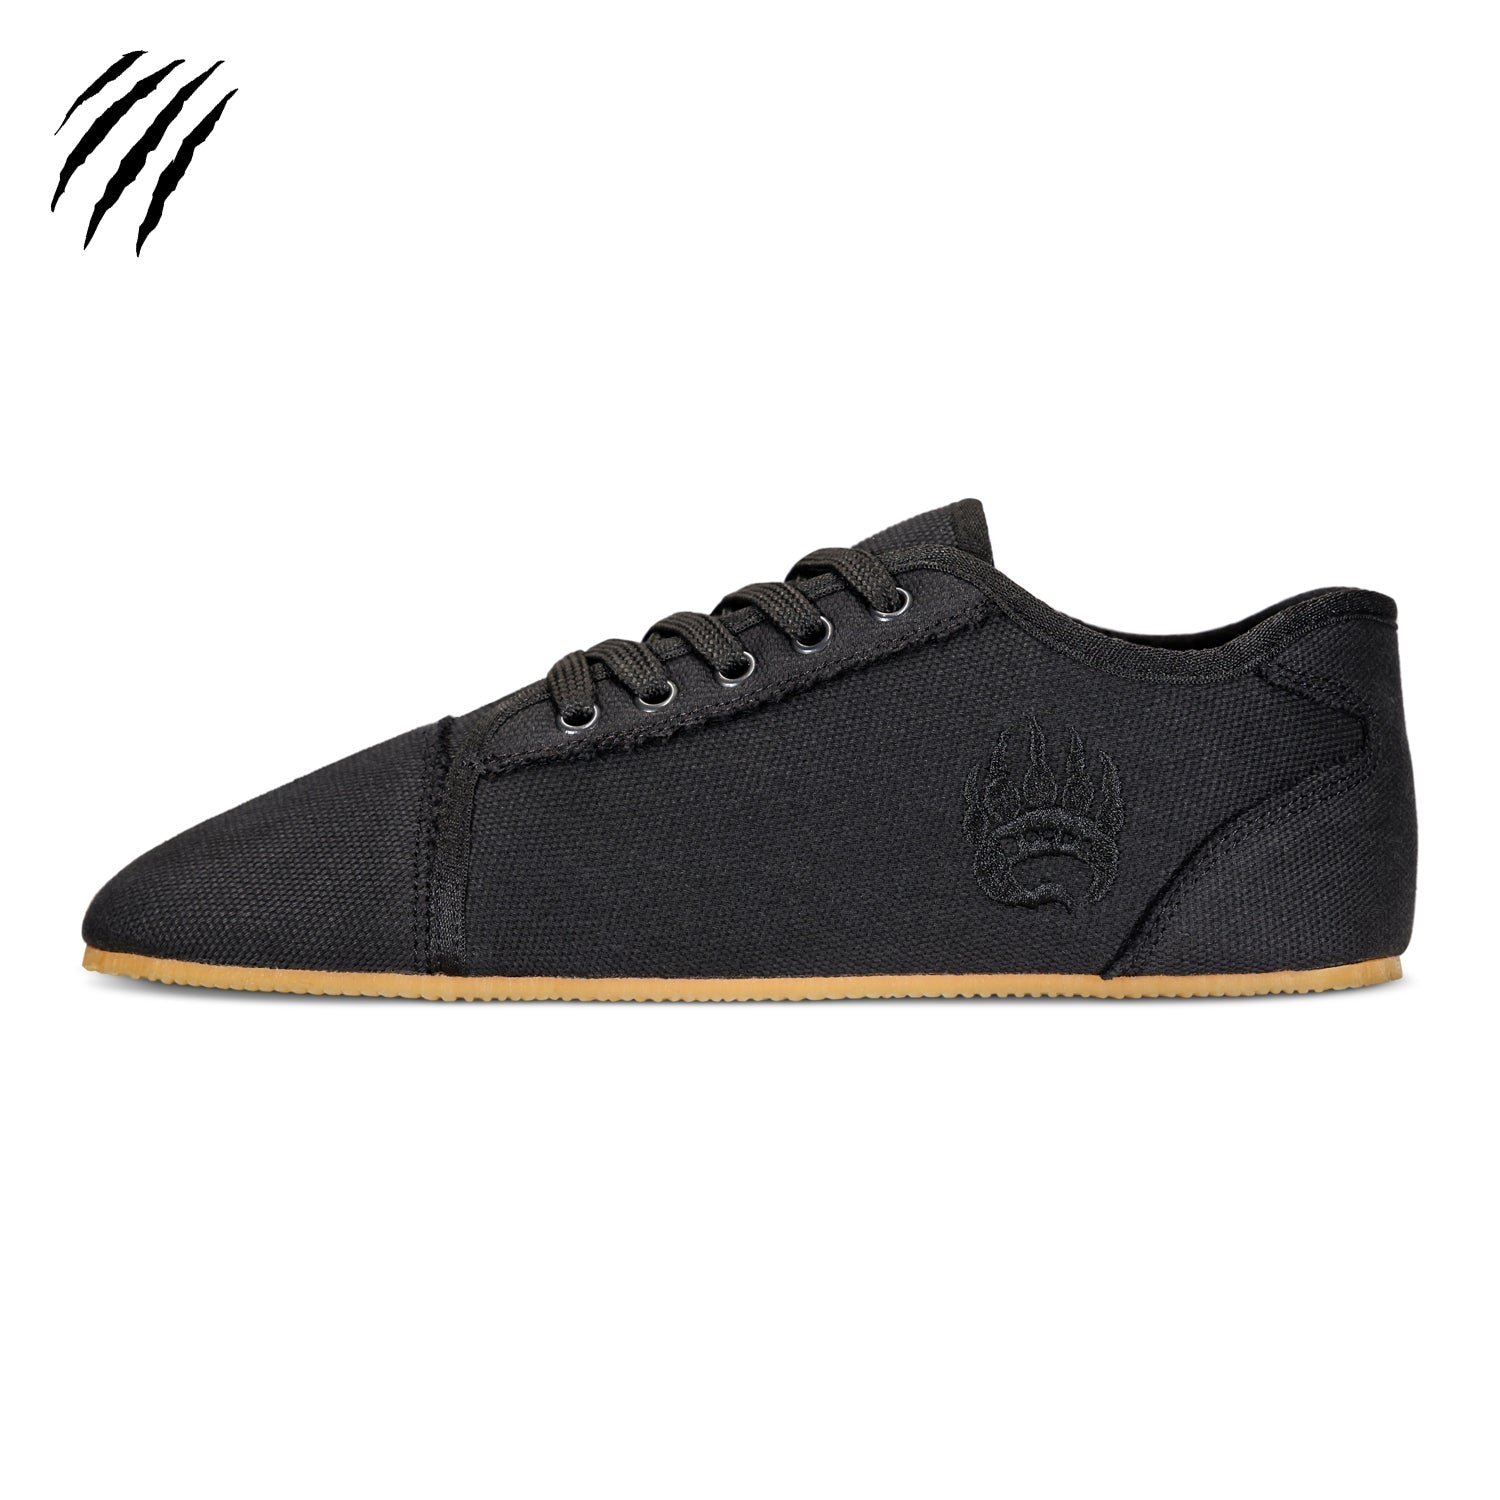 Bearfoot - Ursus C - LT / Black (Blemished) - Shoe